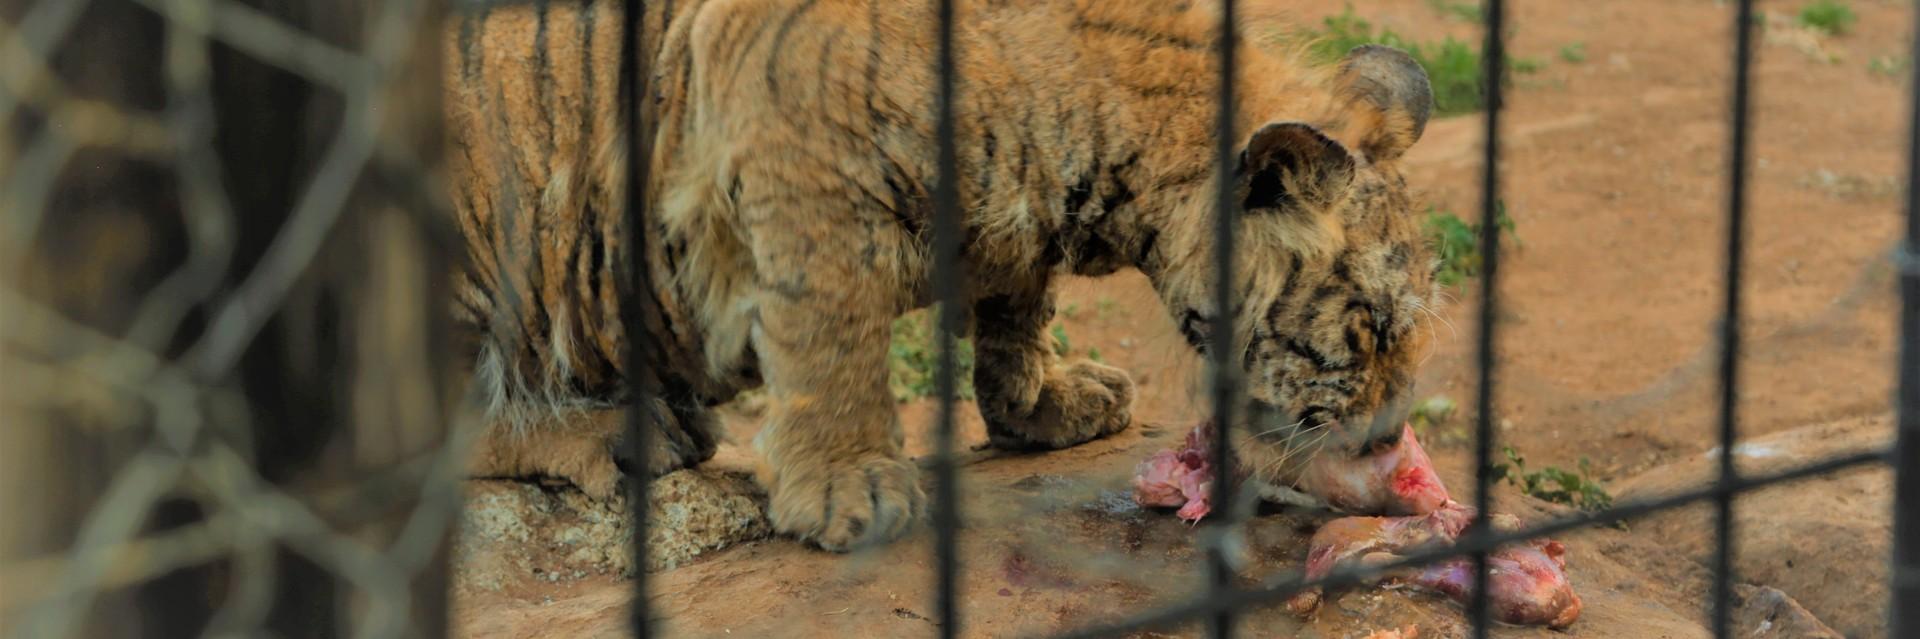 captive cub feeding